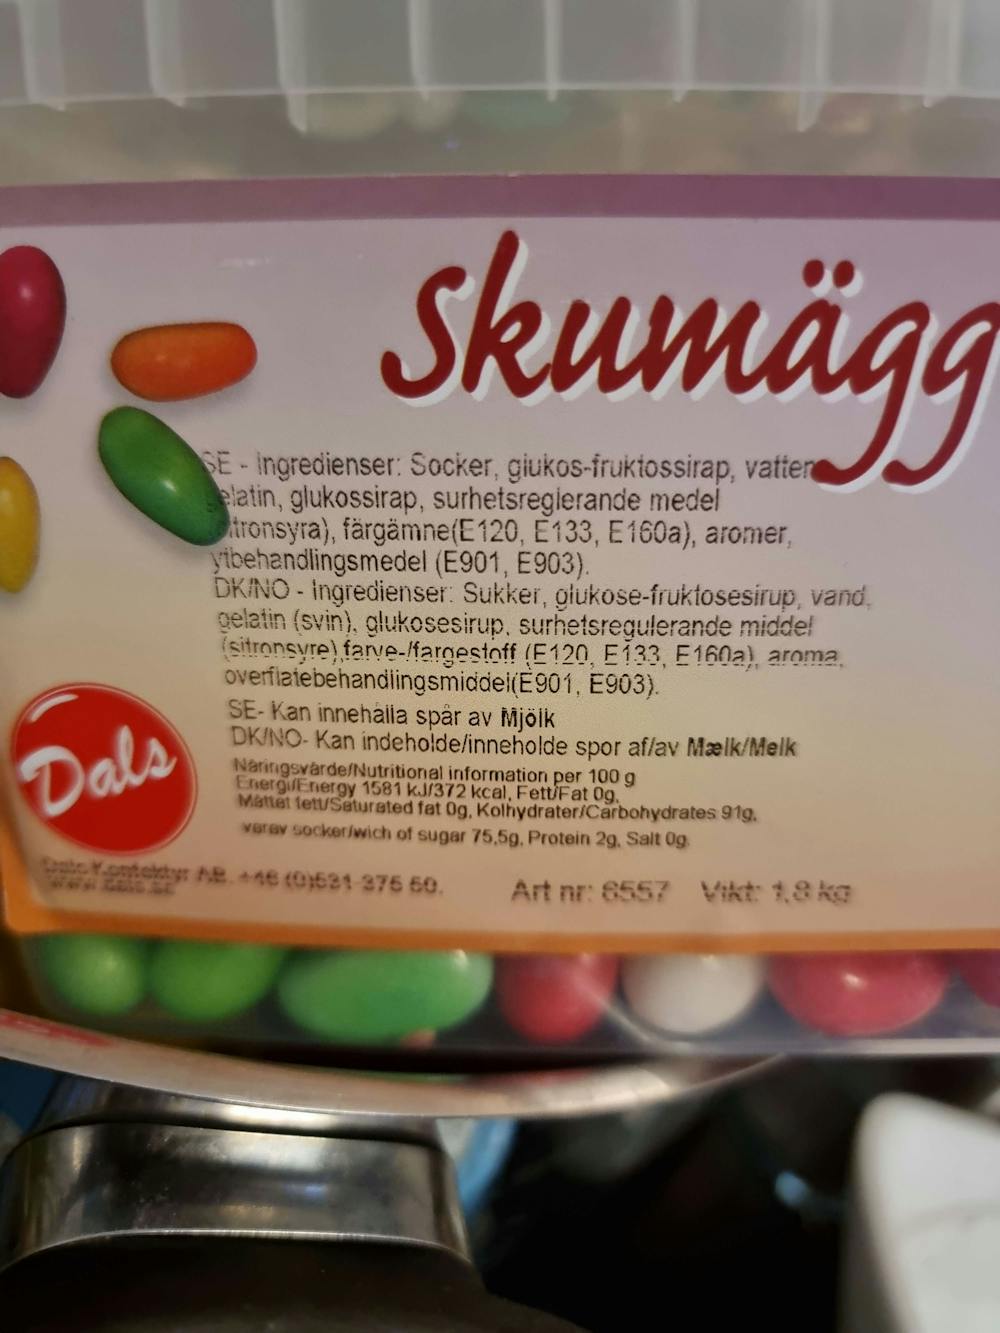 Ingrediensliste - Skumegg, Dals